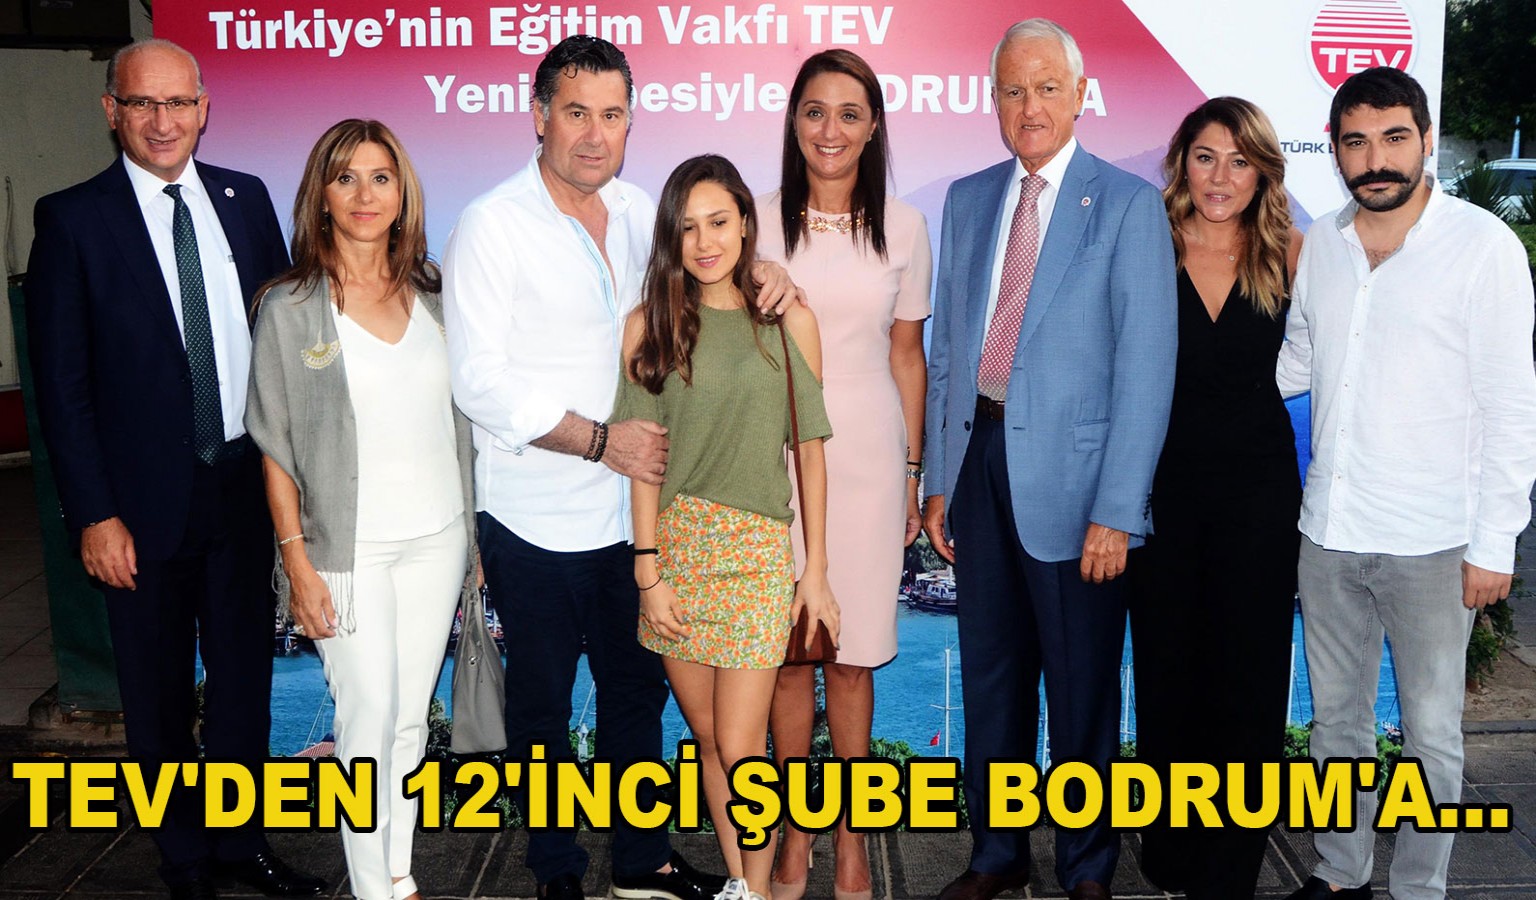 TEV'DEN 12'İNCİ ŞUBE BODRUM'A...